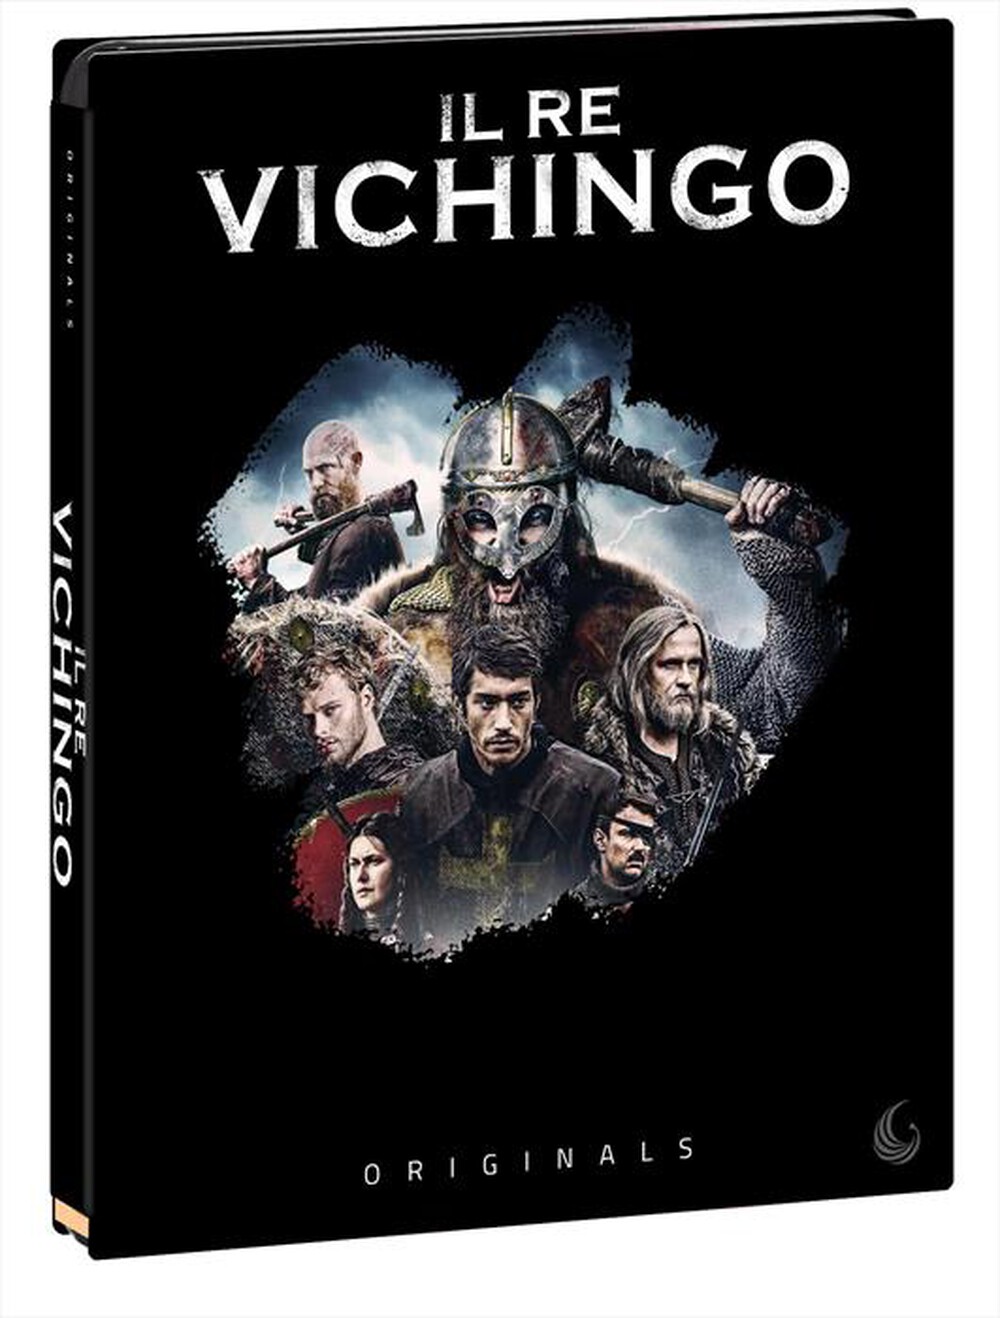 "EAGLE PICTURES - Re Vichingo (Il) (Blu-Ray+Dvd) - "